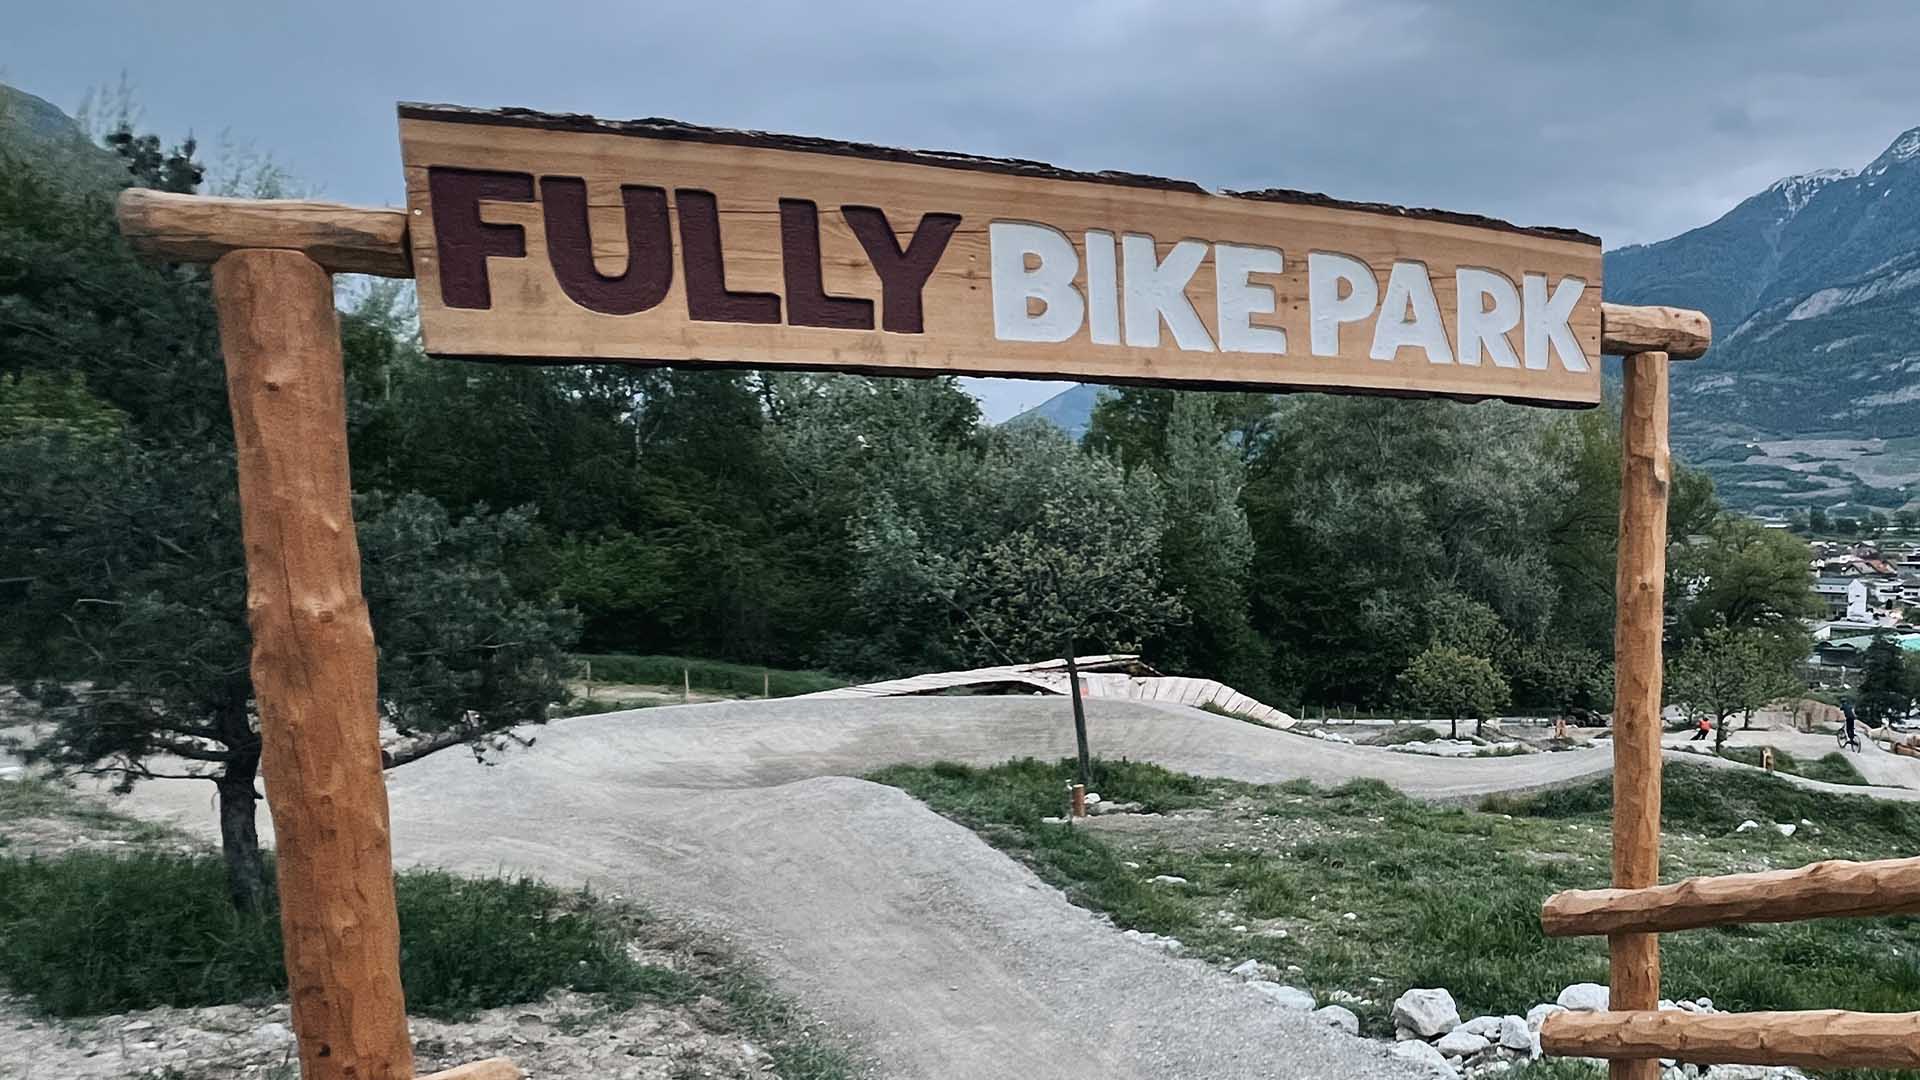 Bikepark in Fully: Eine neue Gelegenheit, von unseren Mountainbike-Fahrkursen zu profitieren